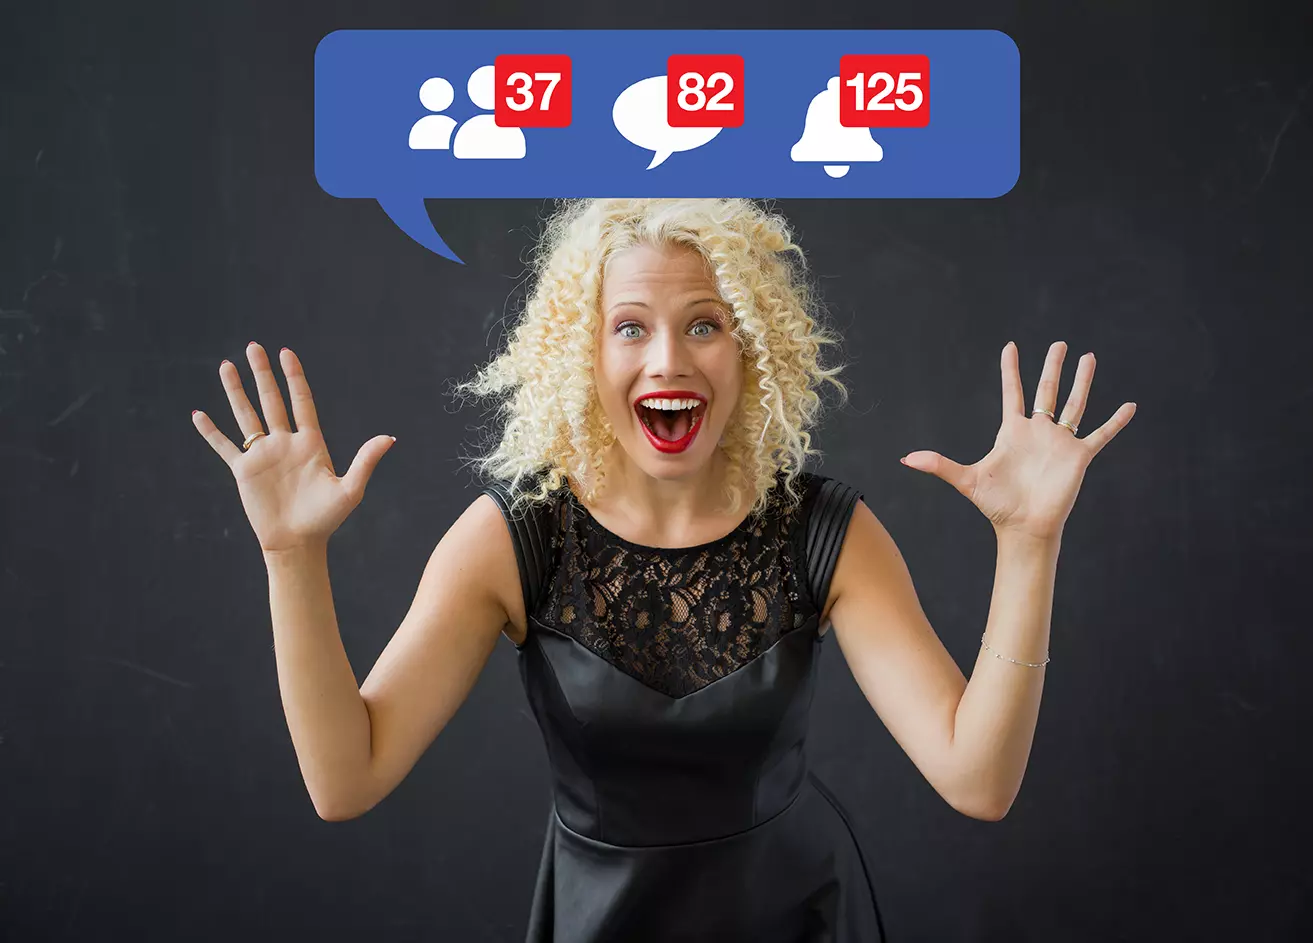 Mujer con vestido y una sonrisa mostrando íconos de facebook, indicando que Facebook TV podría ser lanzada en agosto.